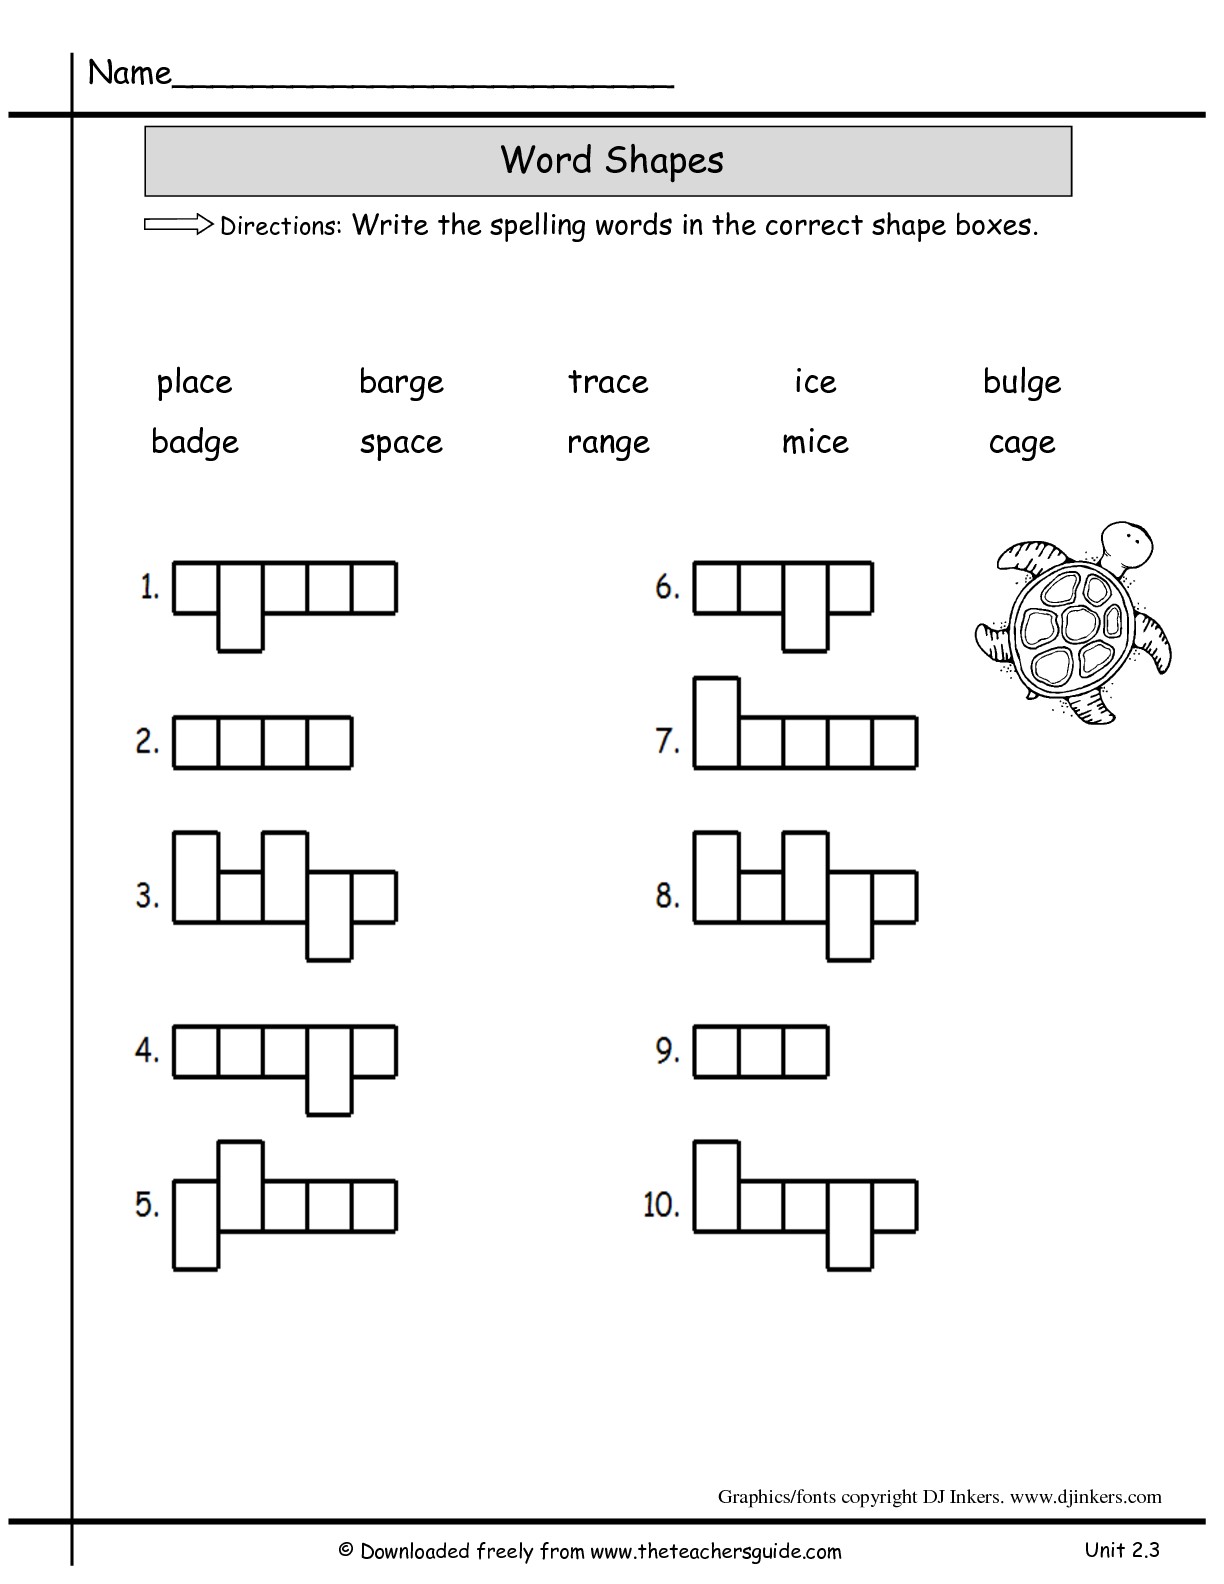 7 Best Images of Second Grade Shapes Worksheets - Math Shapes Worksheet